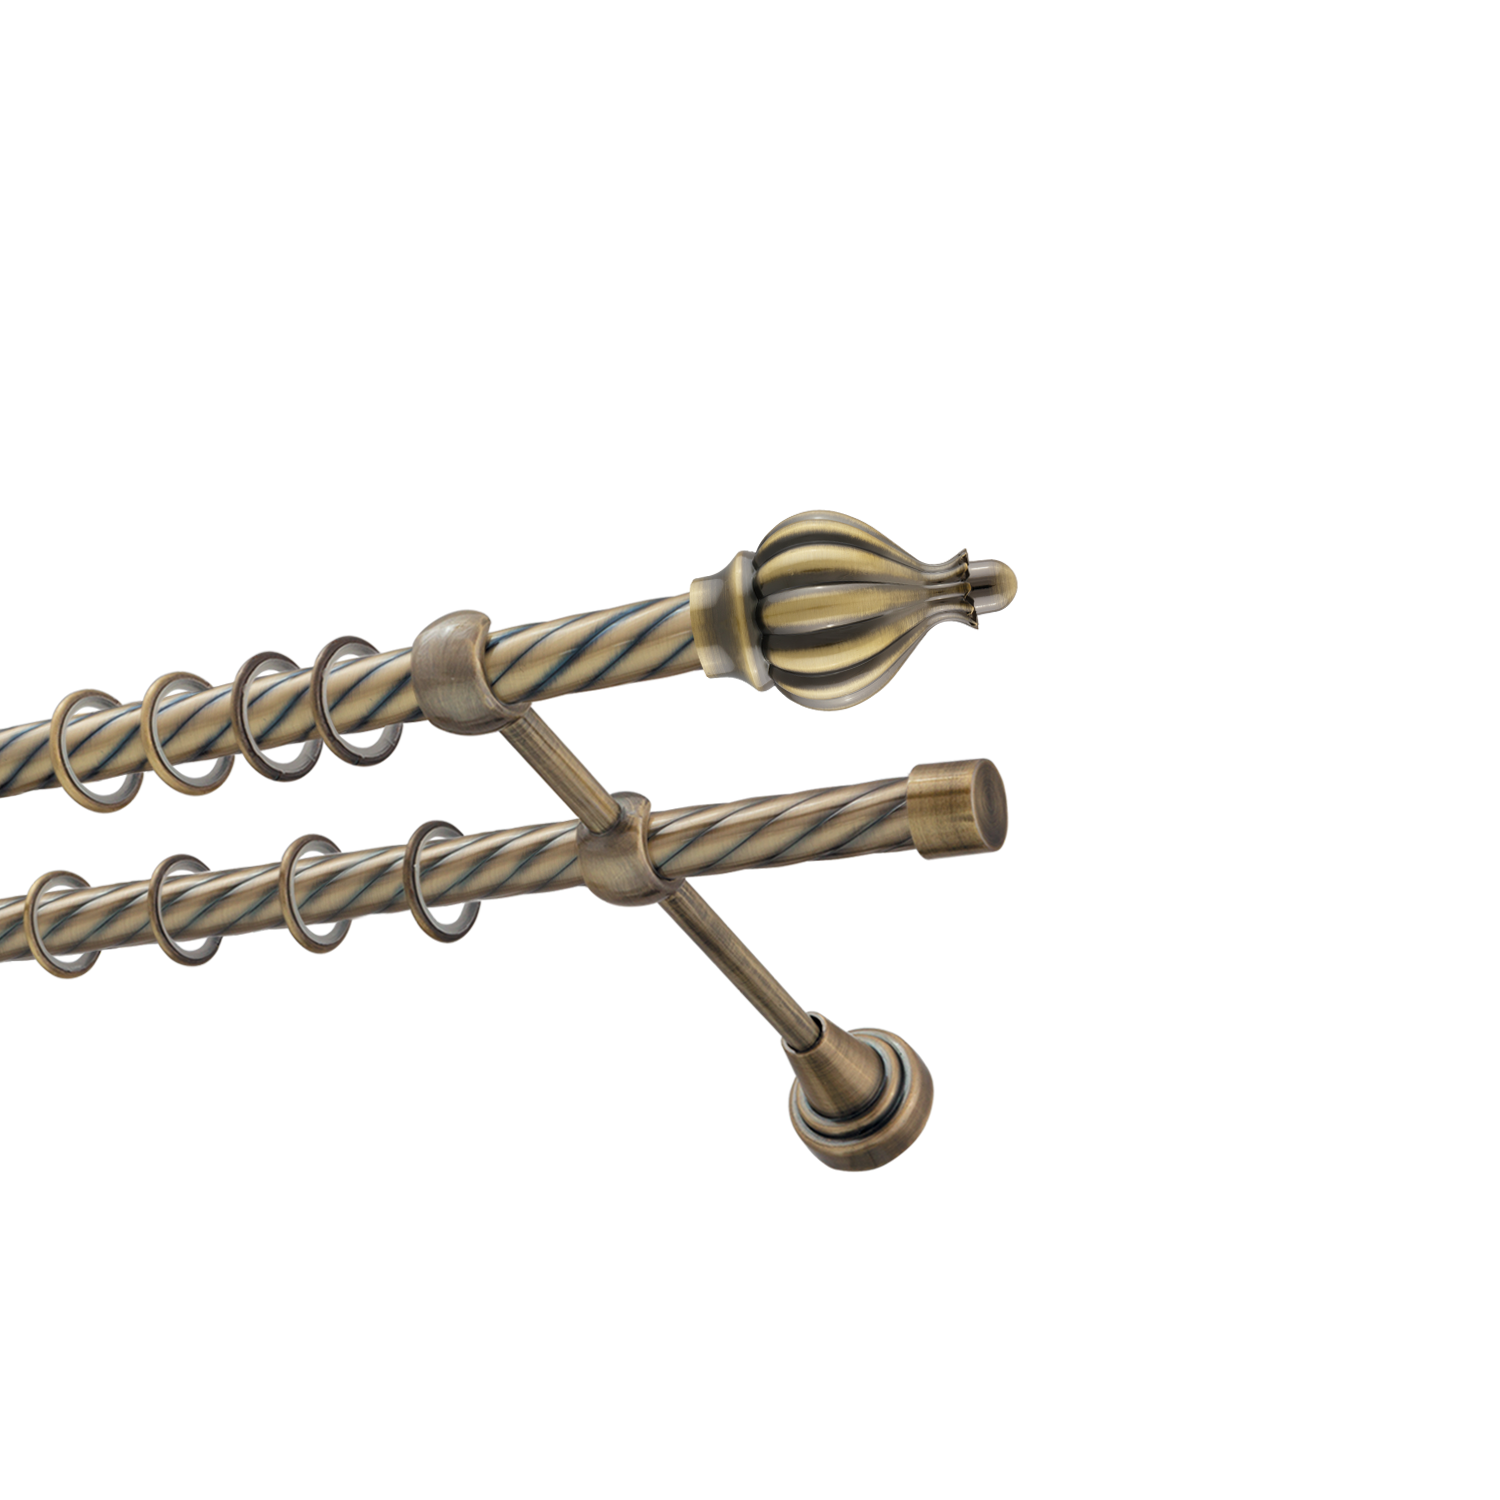 Металлический карниз для штор Афродита, двухрядный 16/16 мм, бронза, витая штанга, длина 160 см - фото Wikidecor.ru